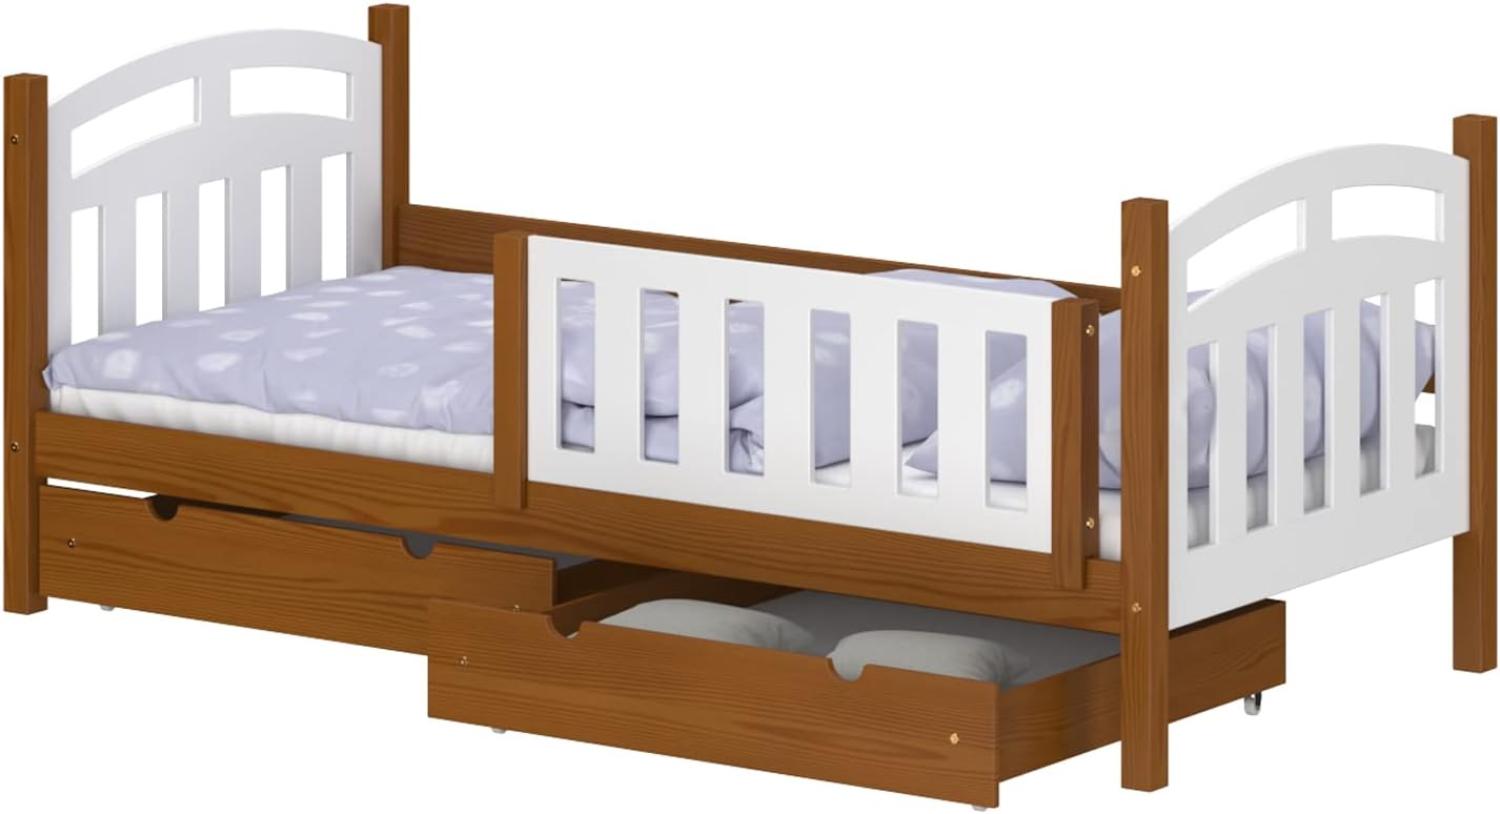 WNM Group Kinderbett mit Rausfallschutz Suzie - Jugenbett aus Massivholz - Bett mit 2 Schubladen für Mädchen und Jungen - Funktionsbett 160x80 cm - Braun Bild 1